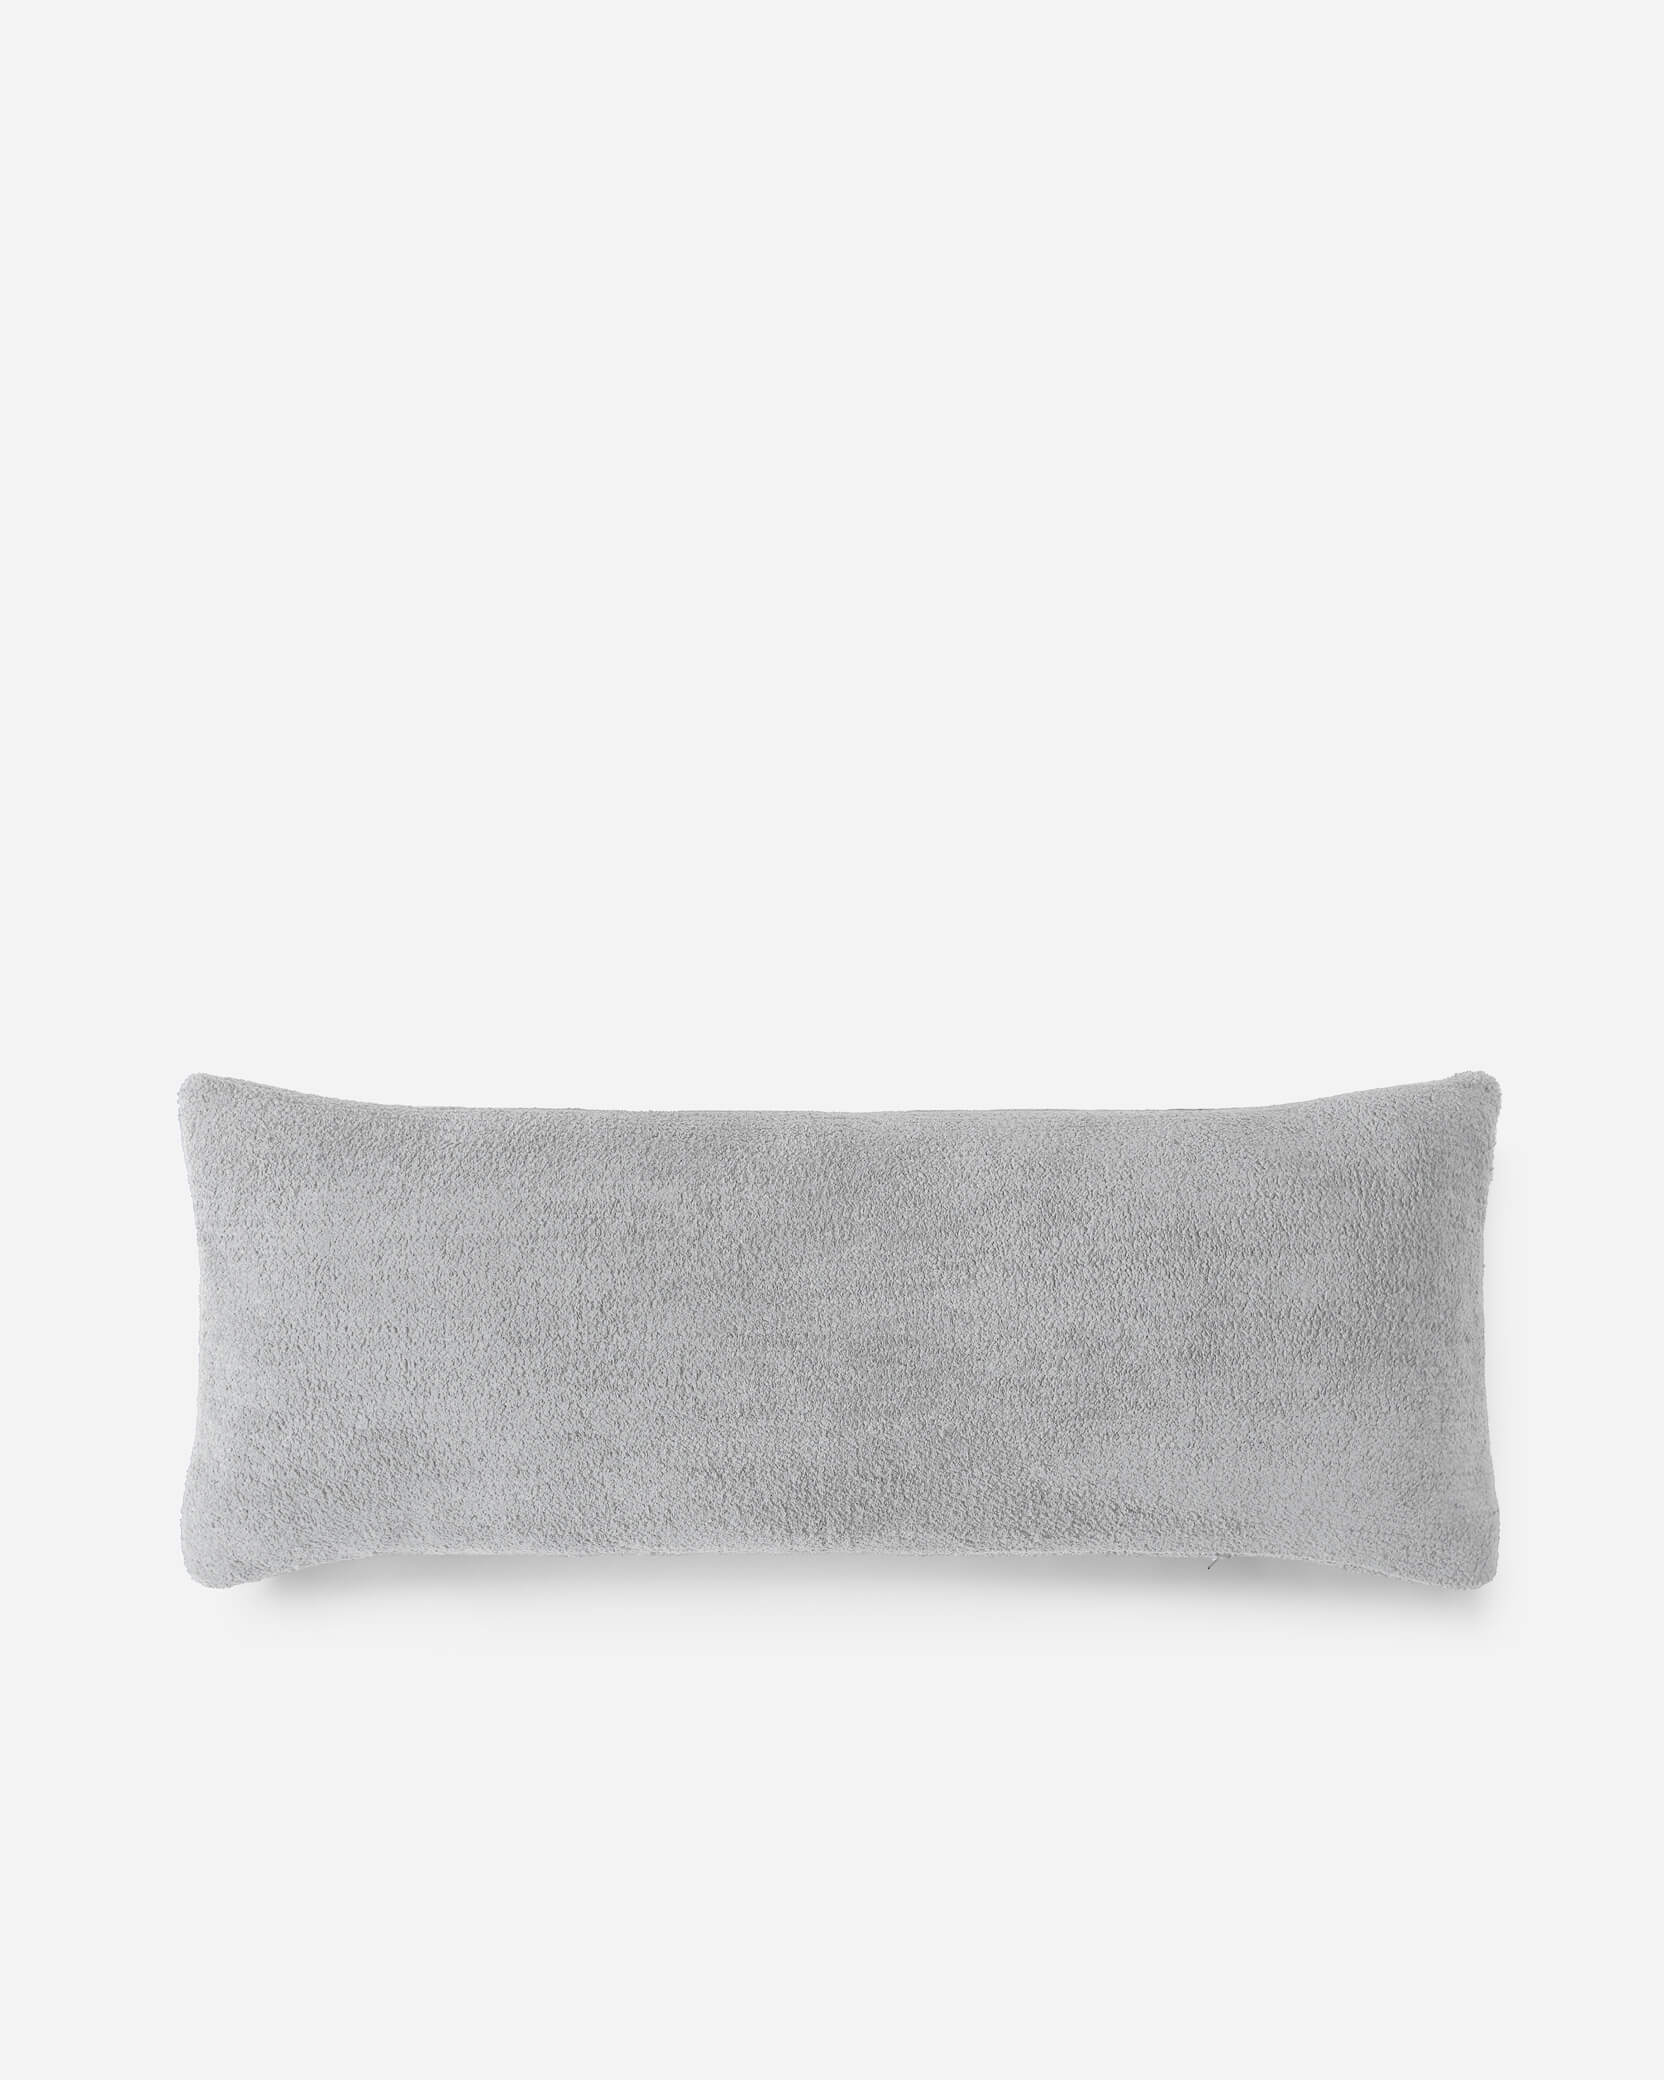 Pillow - 25 x 12 in. lumbar in Black